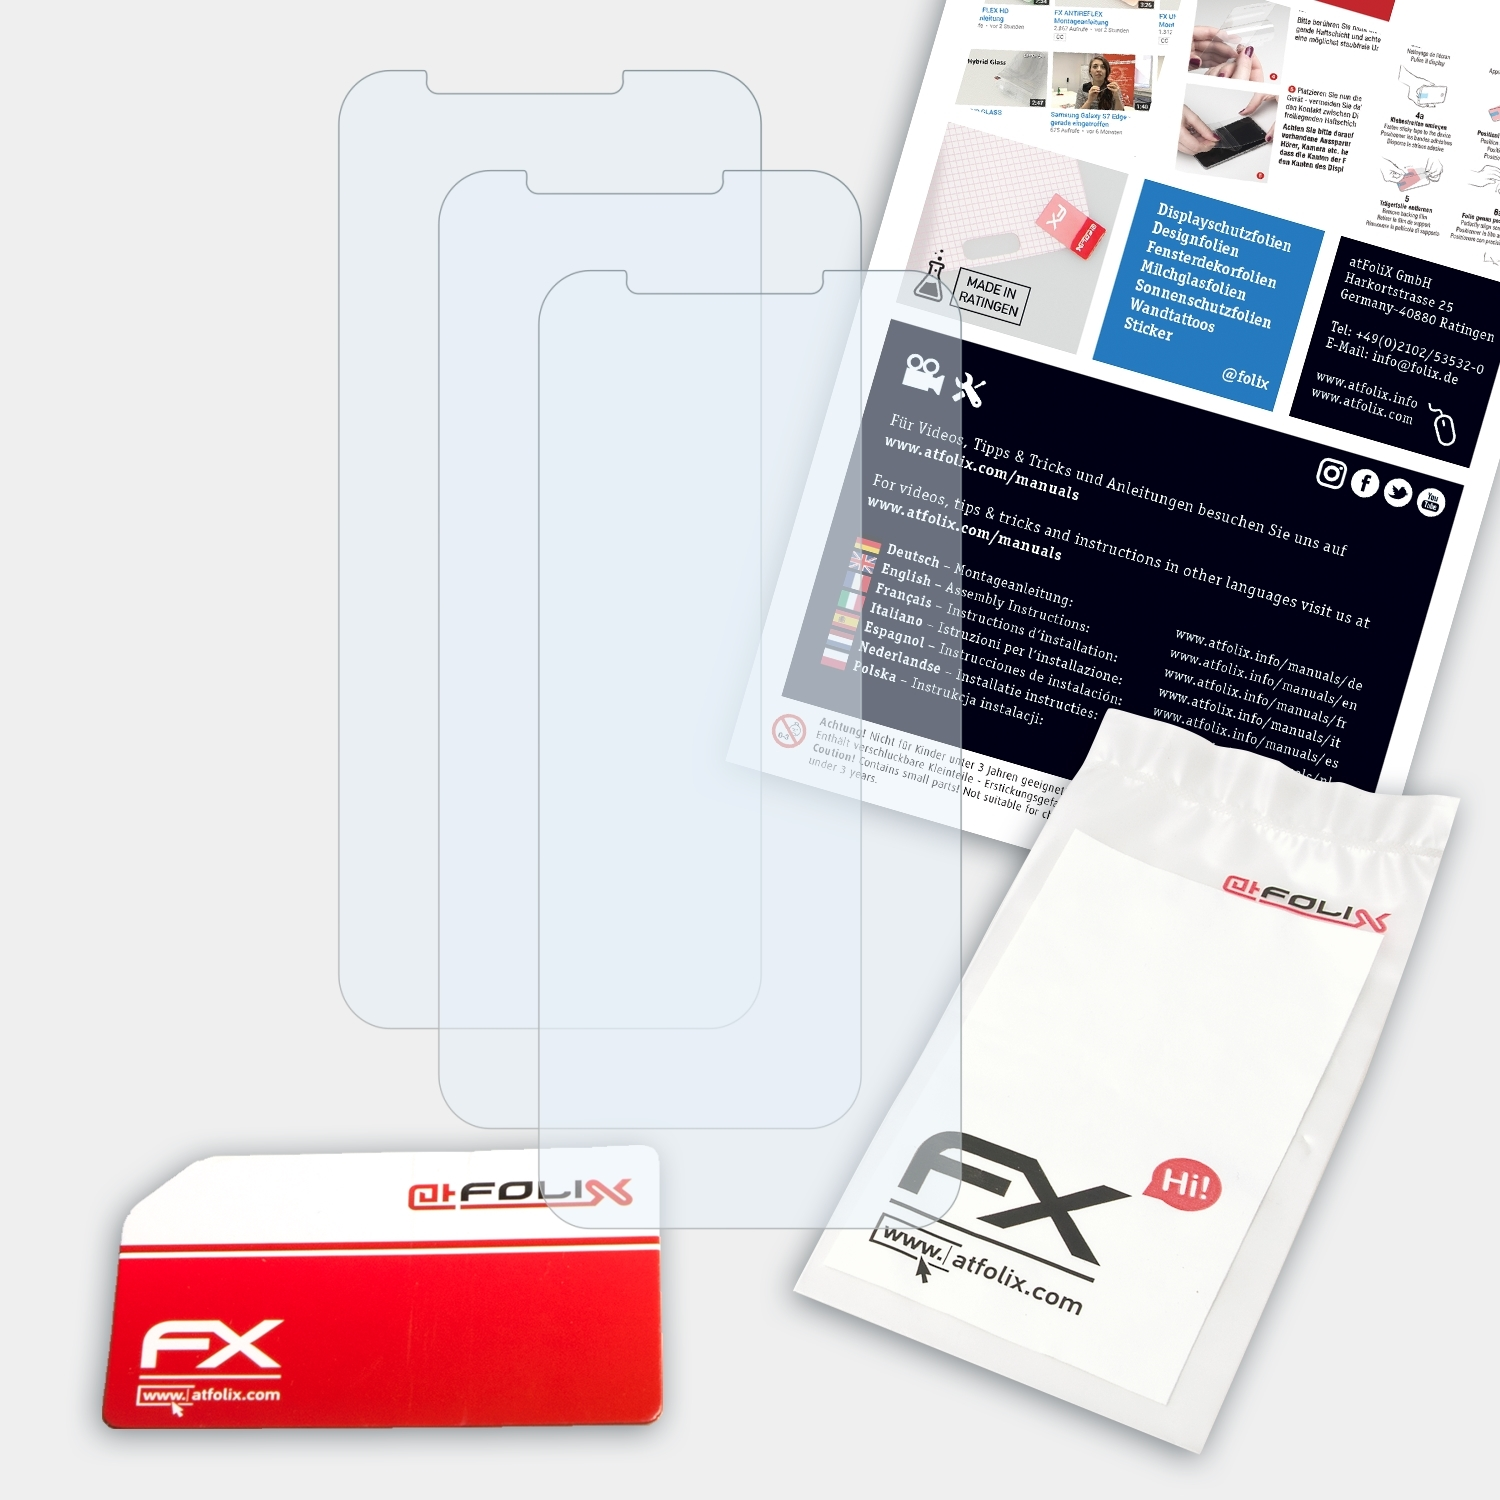 ATFOLIX 3x FX-Clear 1s) Exodus HTC Displayschutz(für